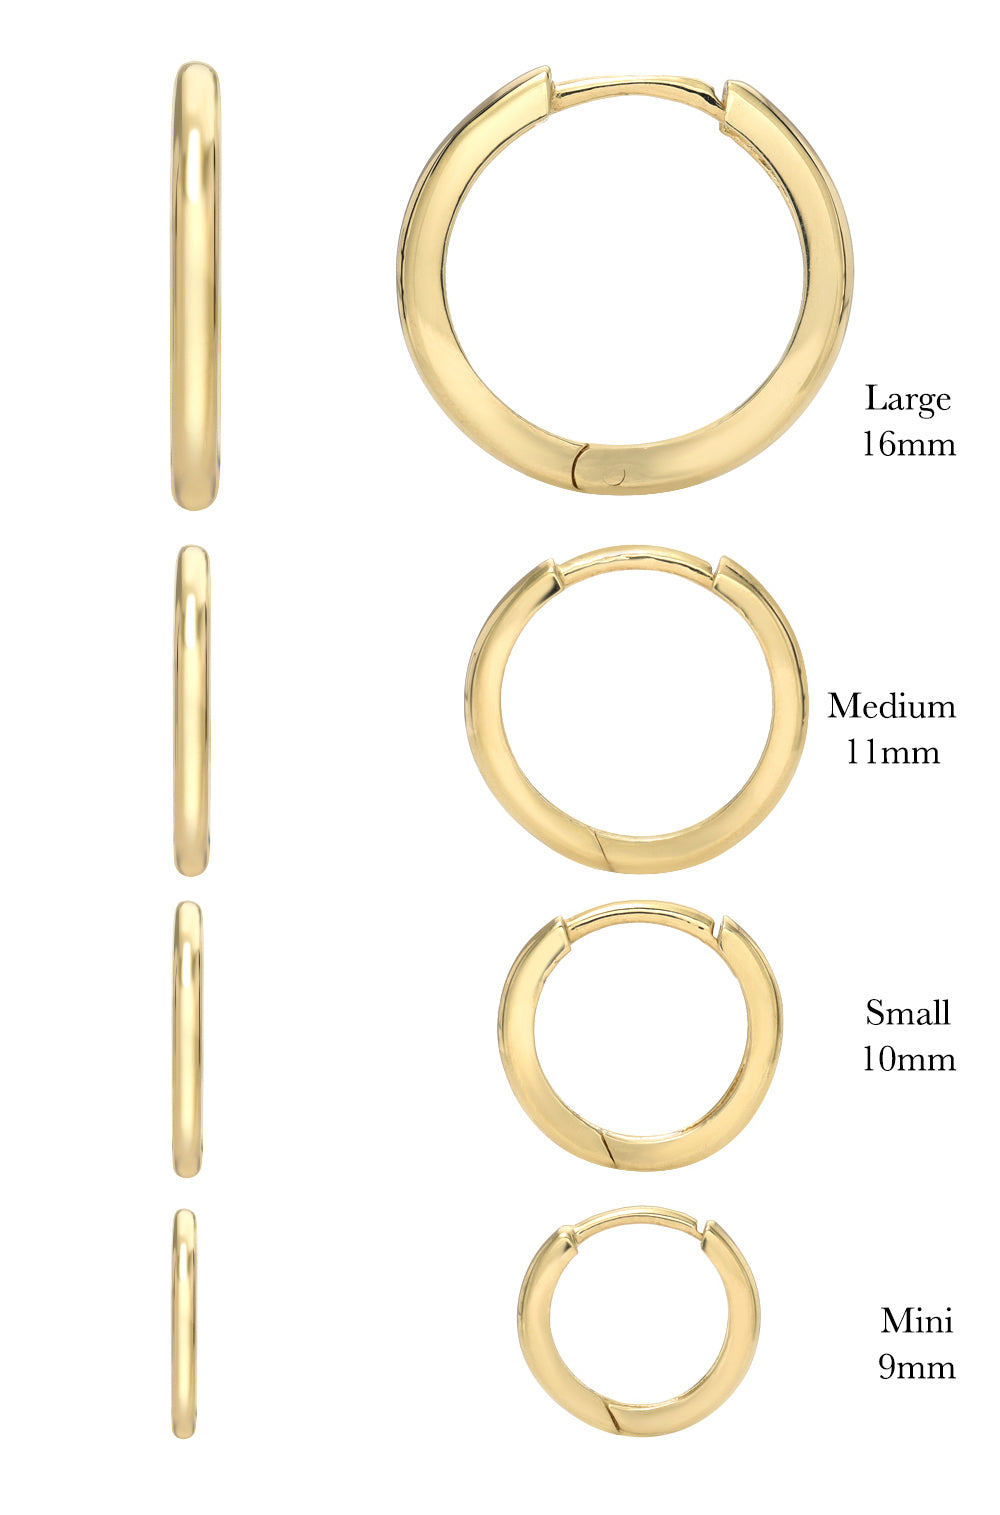 14k Gold Medium Huggie Earrings